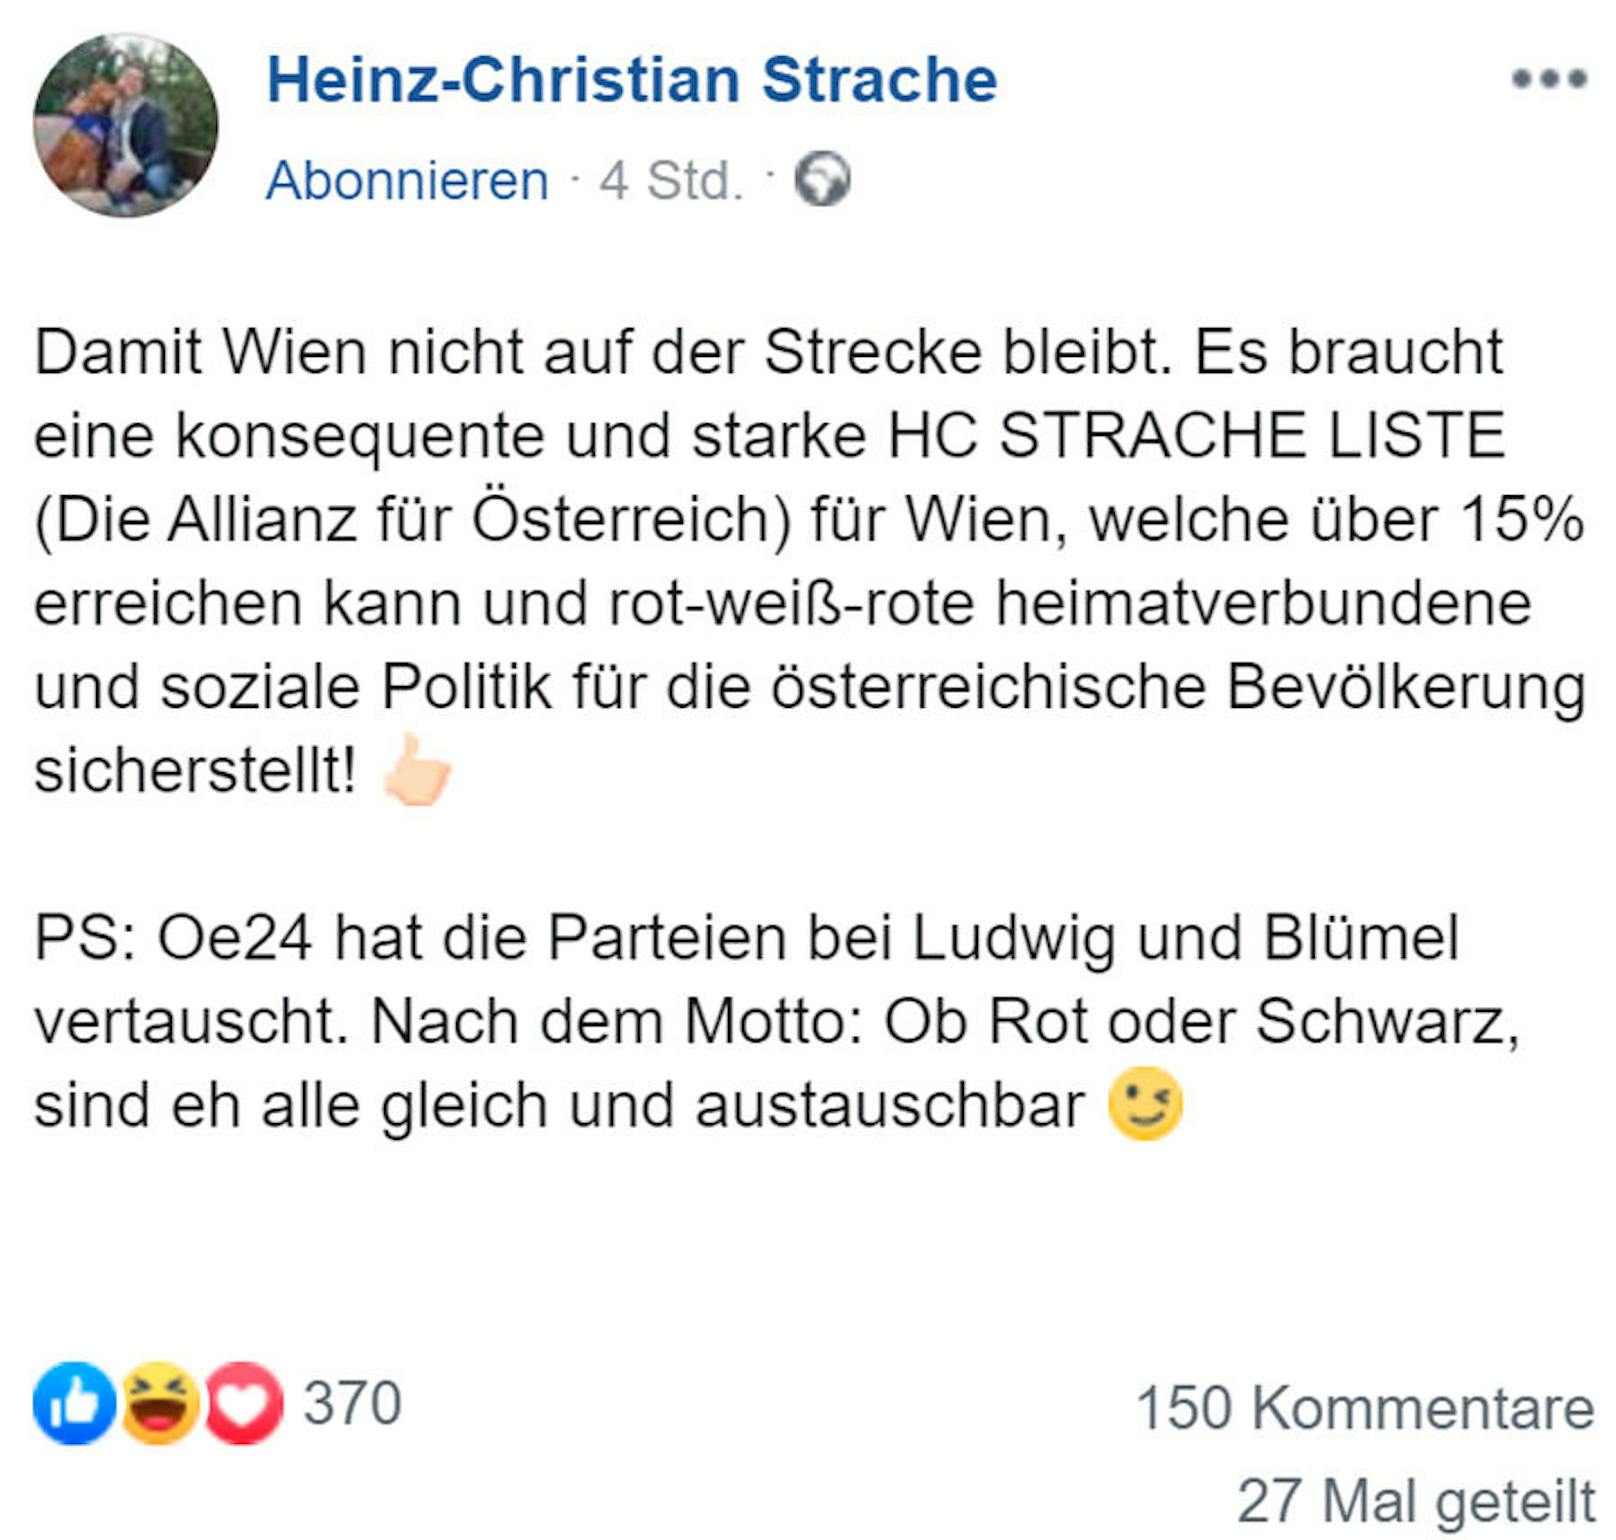 Eine spätere Änderung des Beitrags enthüllt: Das Vehikel für die Liste HC Strache soll offenbar die DAÖ sein.